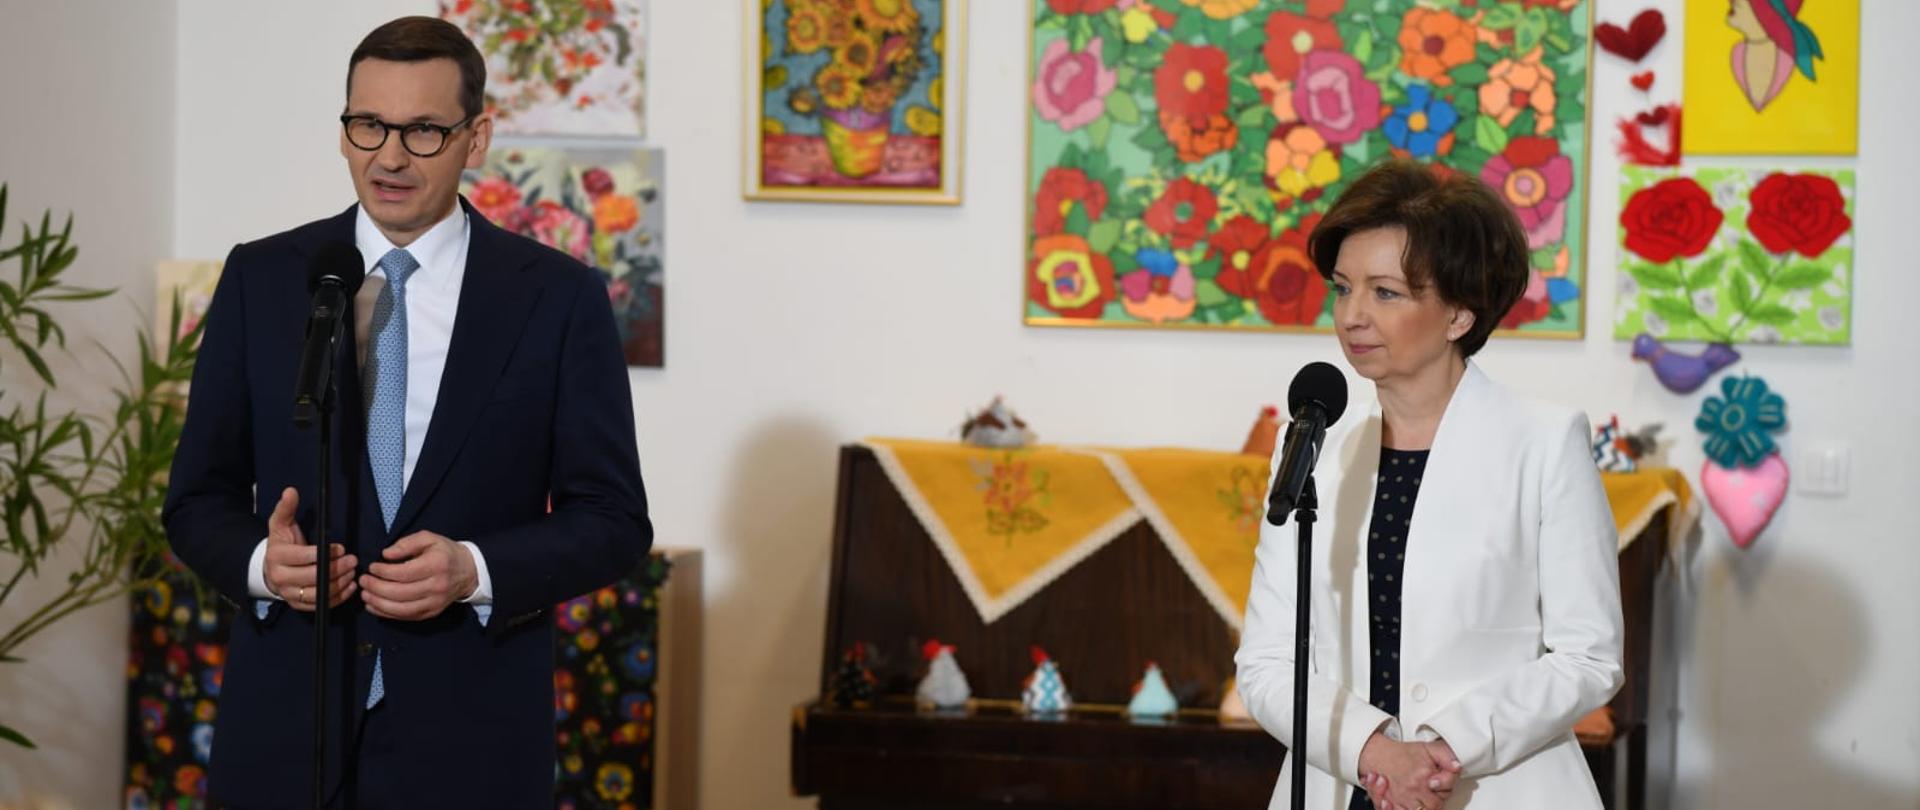 Na zdjęciu premier Morawiecki i minister Maląg. Stoją przy mikrofonach. Z gestykulacji wynika, że przemawia właśnie premier Morawiecki. W tle na ścianie wiszą kolorowe obrazki. Widać także pianino, na którym zostaly umieszczone elementy świąteczne. 